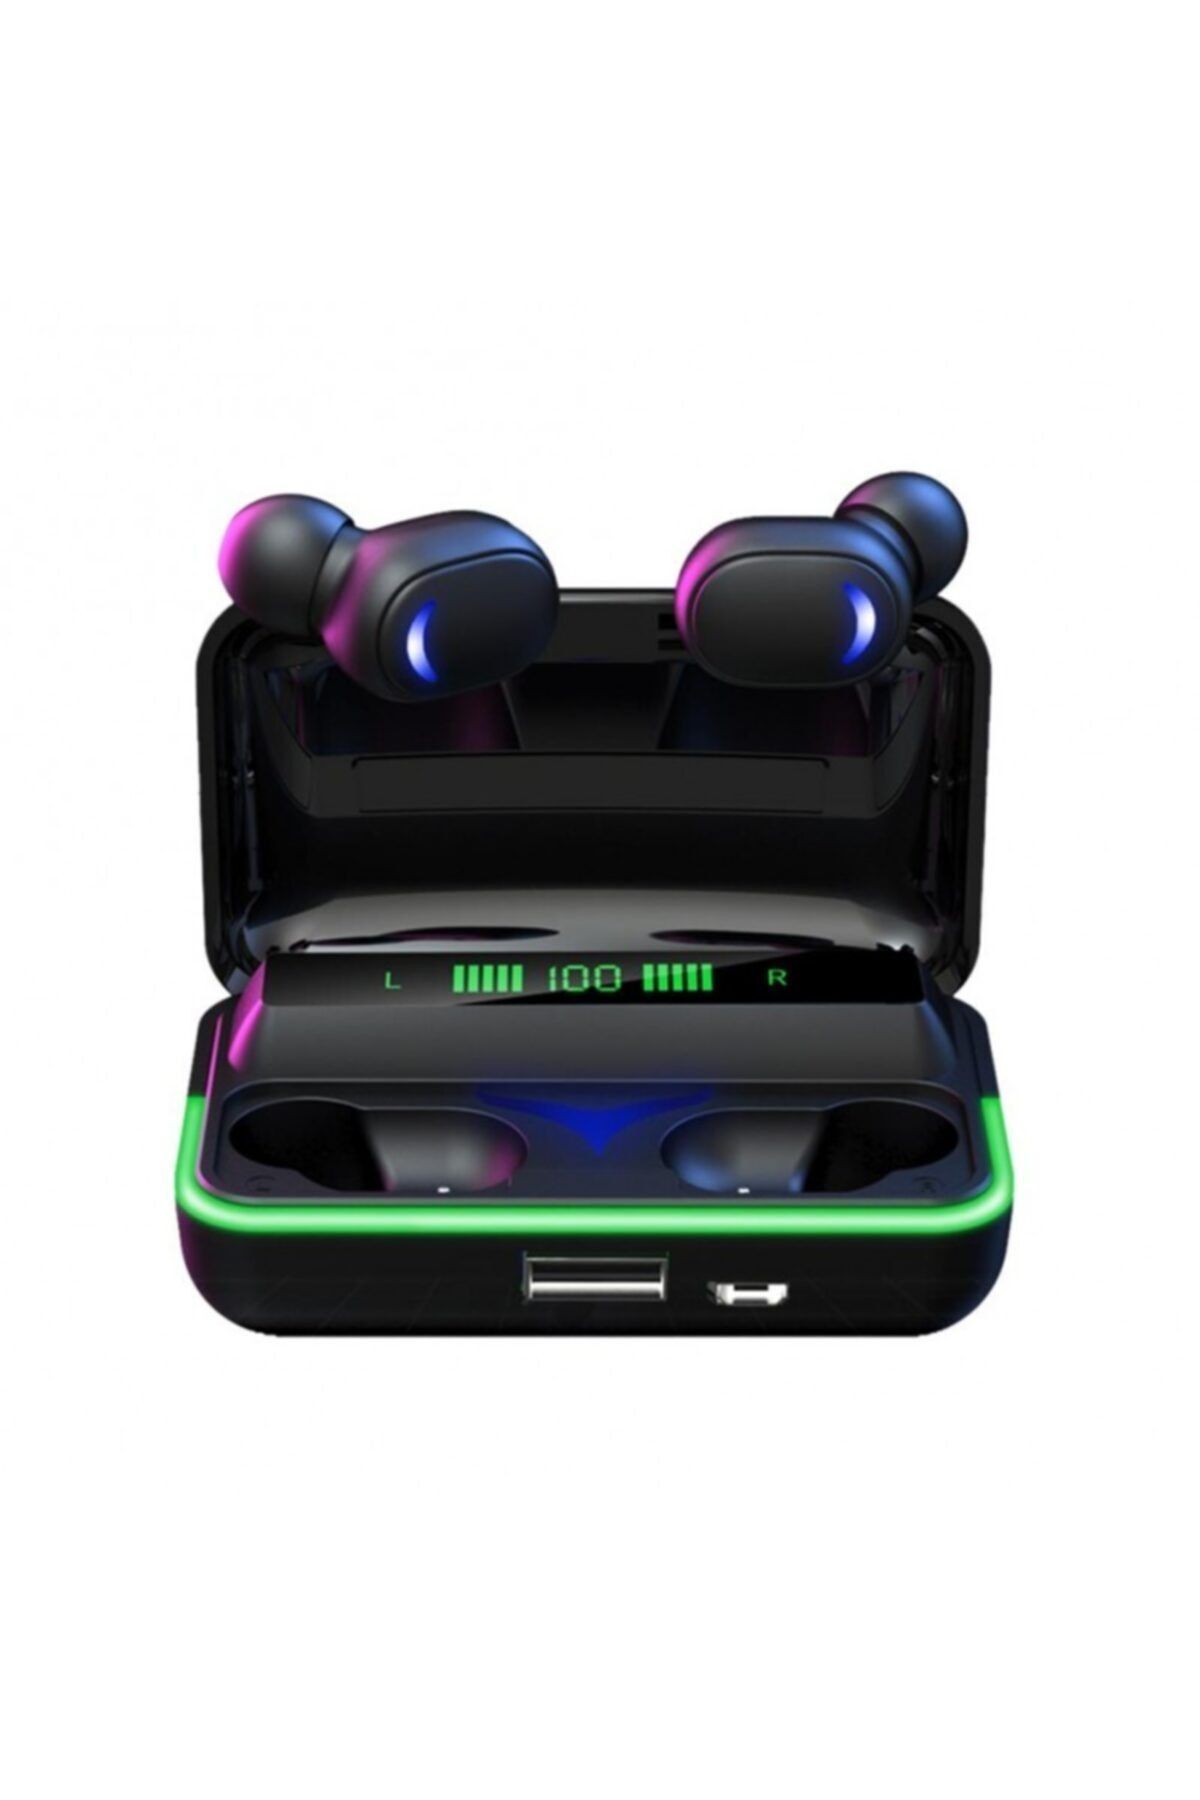 OWWOTECH E10 Oyuncu Telefon Kulaklığı Rgb Işıklı Kablosuz Oyuncu Kulaklığı-her Telefona Uyumludur